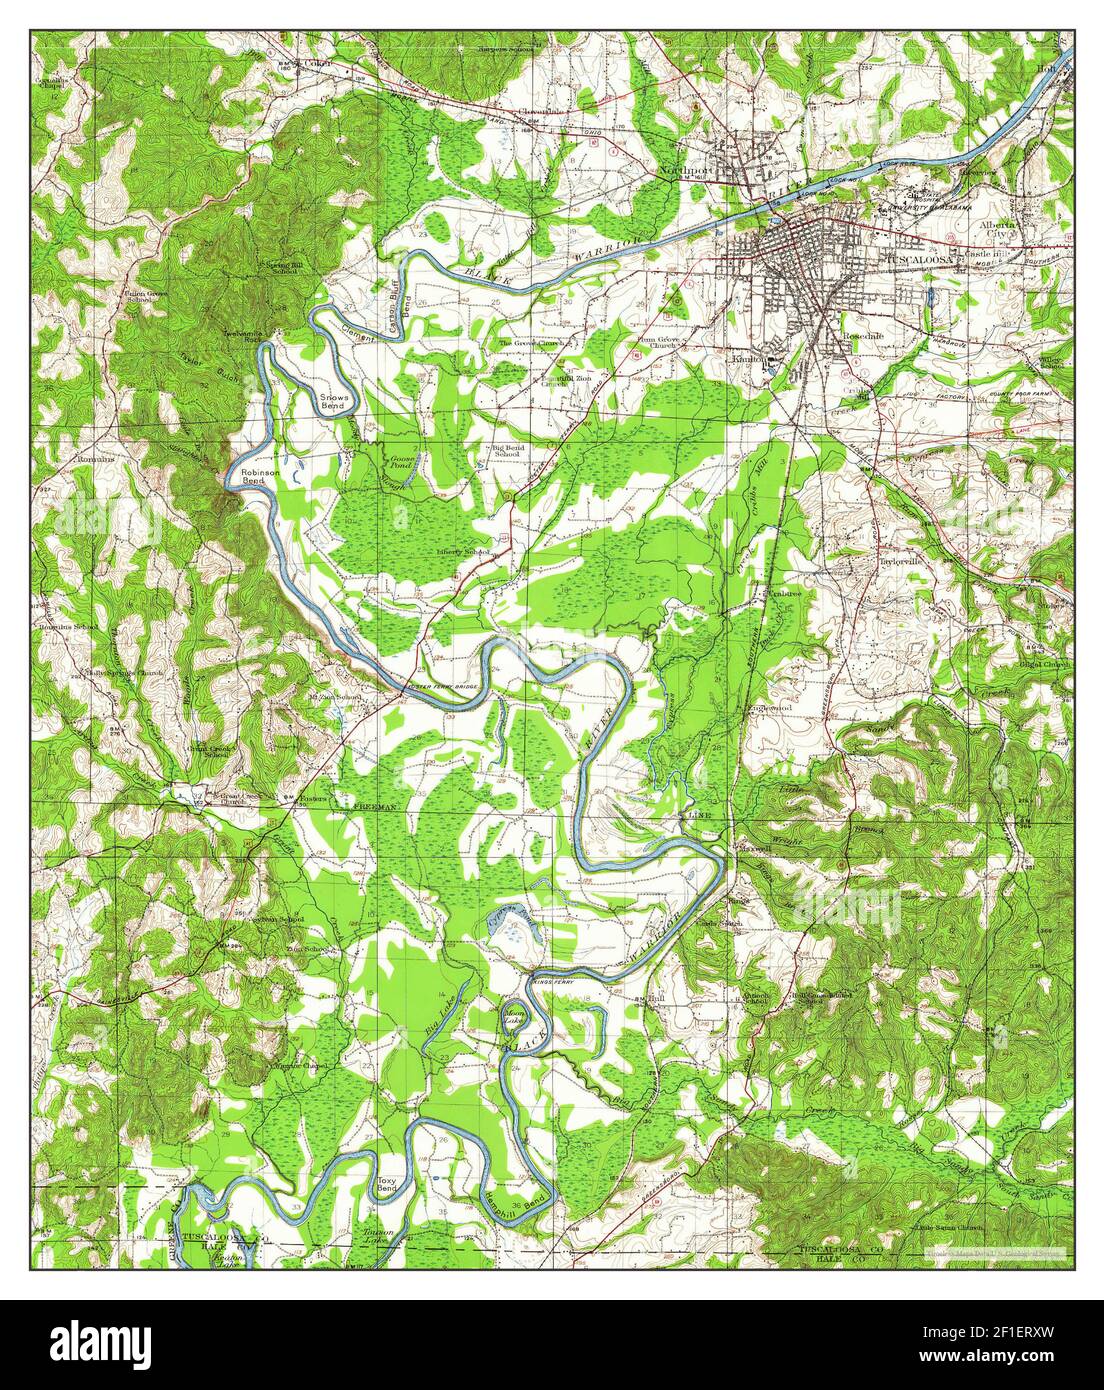 Tuscaloosa, Alabama, Karte 1924, 1:62500, Vereinigte Staaten von Amerika von Timeless Maps, Daten U.S. Geological Survey Stockfoto